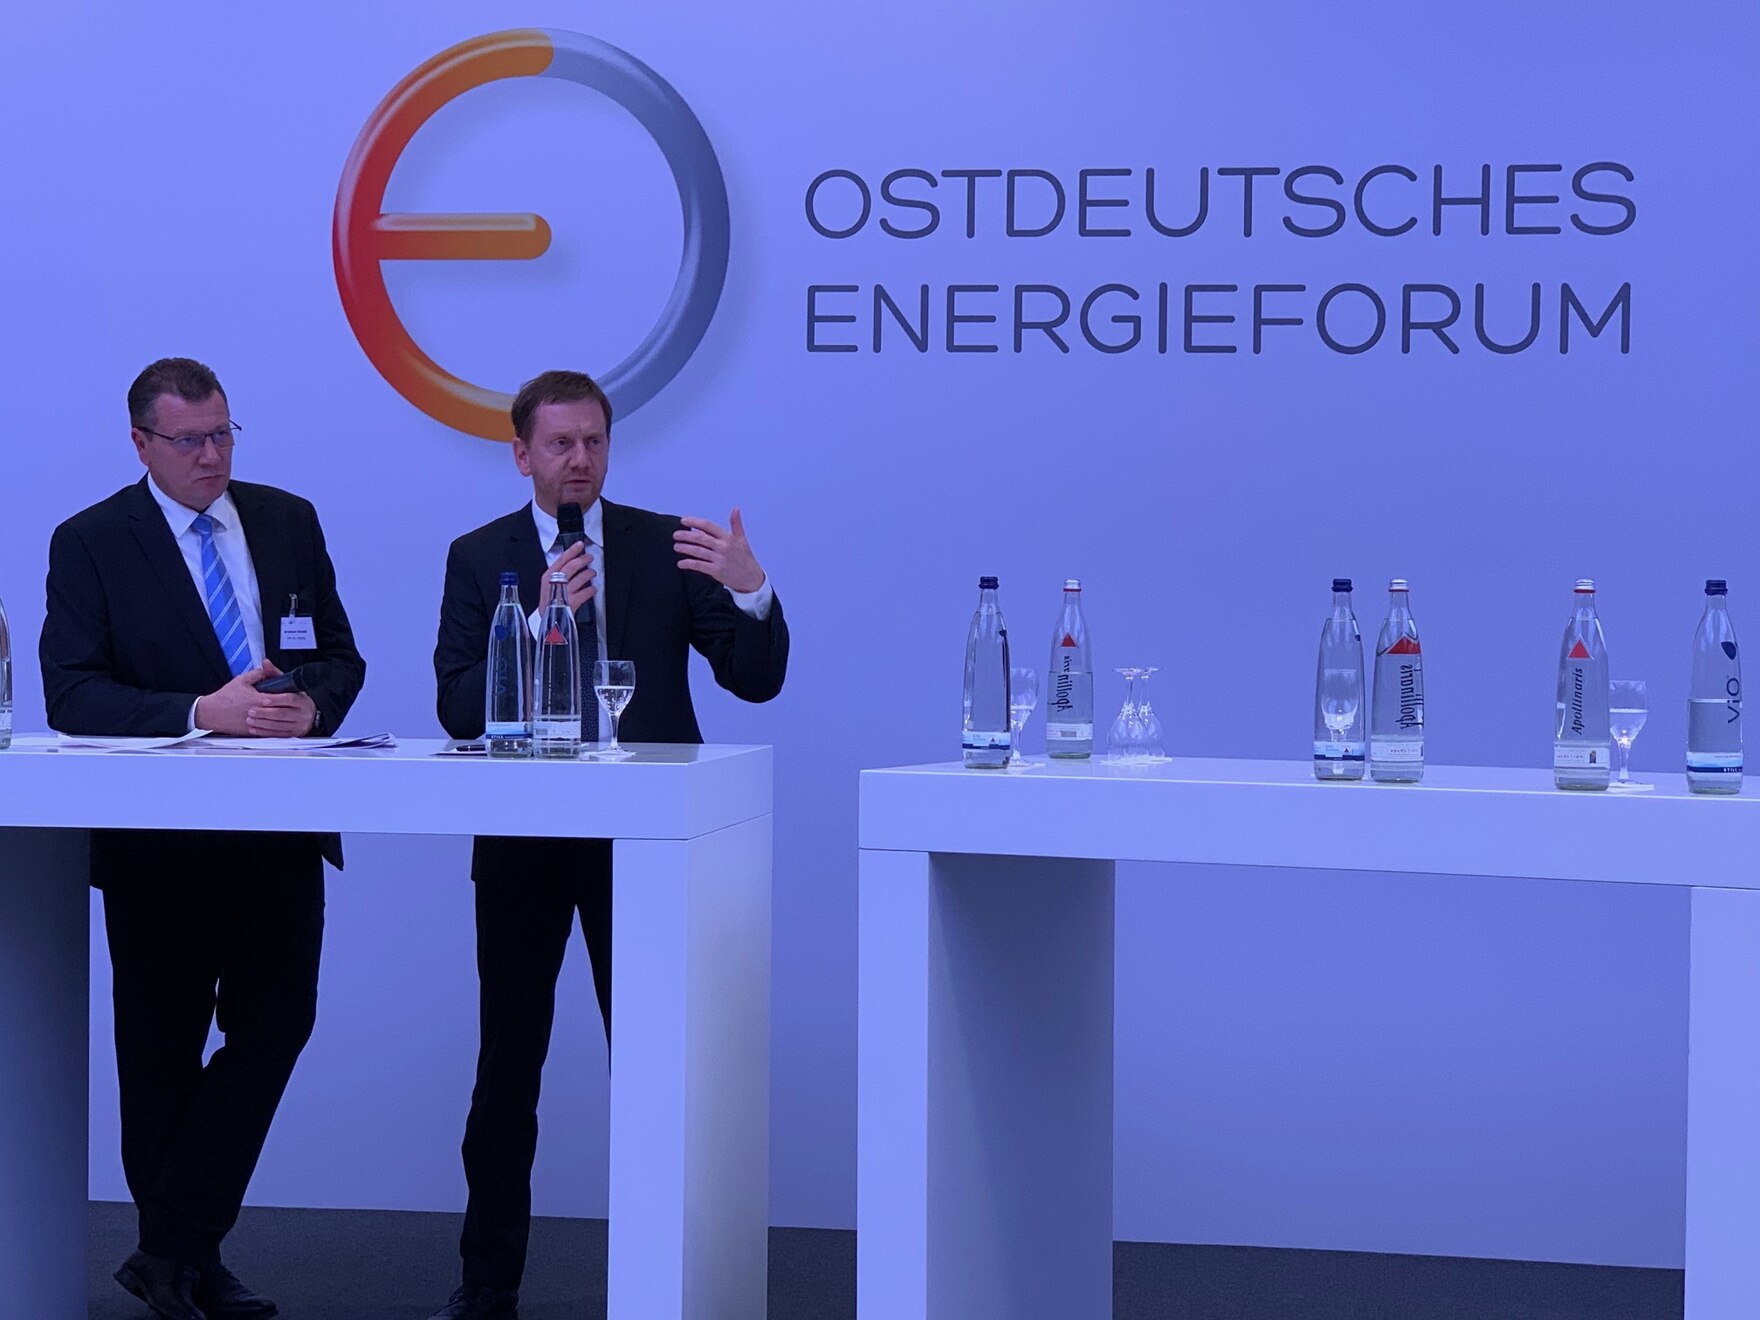 Zwei Männer stehen vor einer Wand auf der »Ostdeutsches Energieforum« steht.